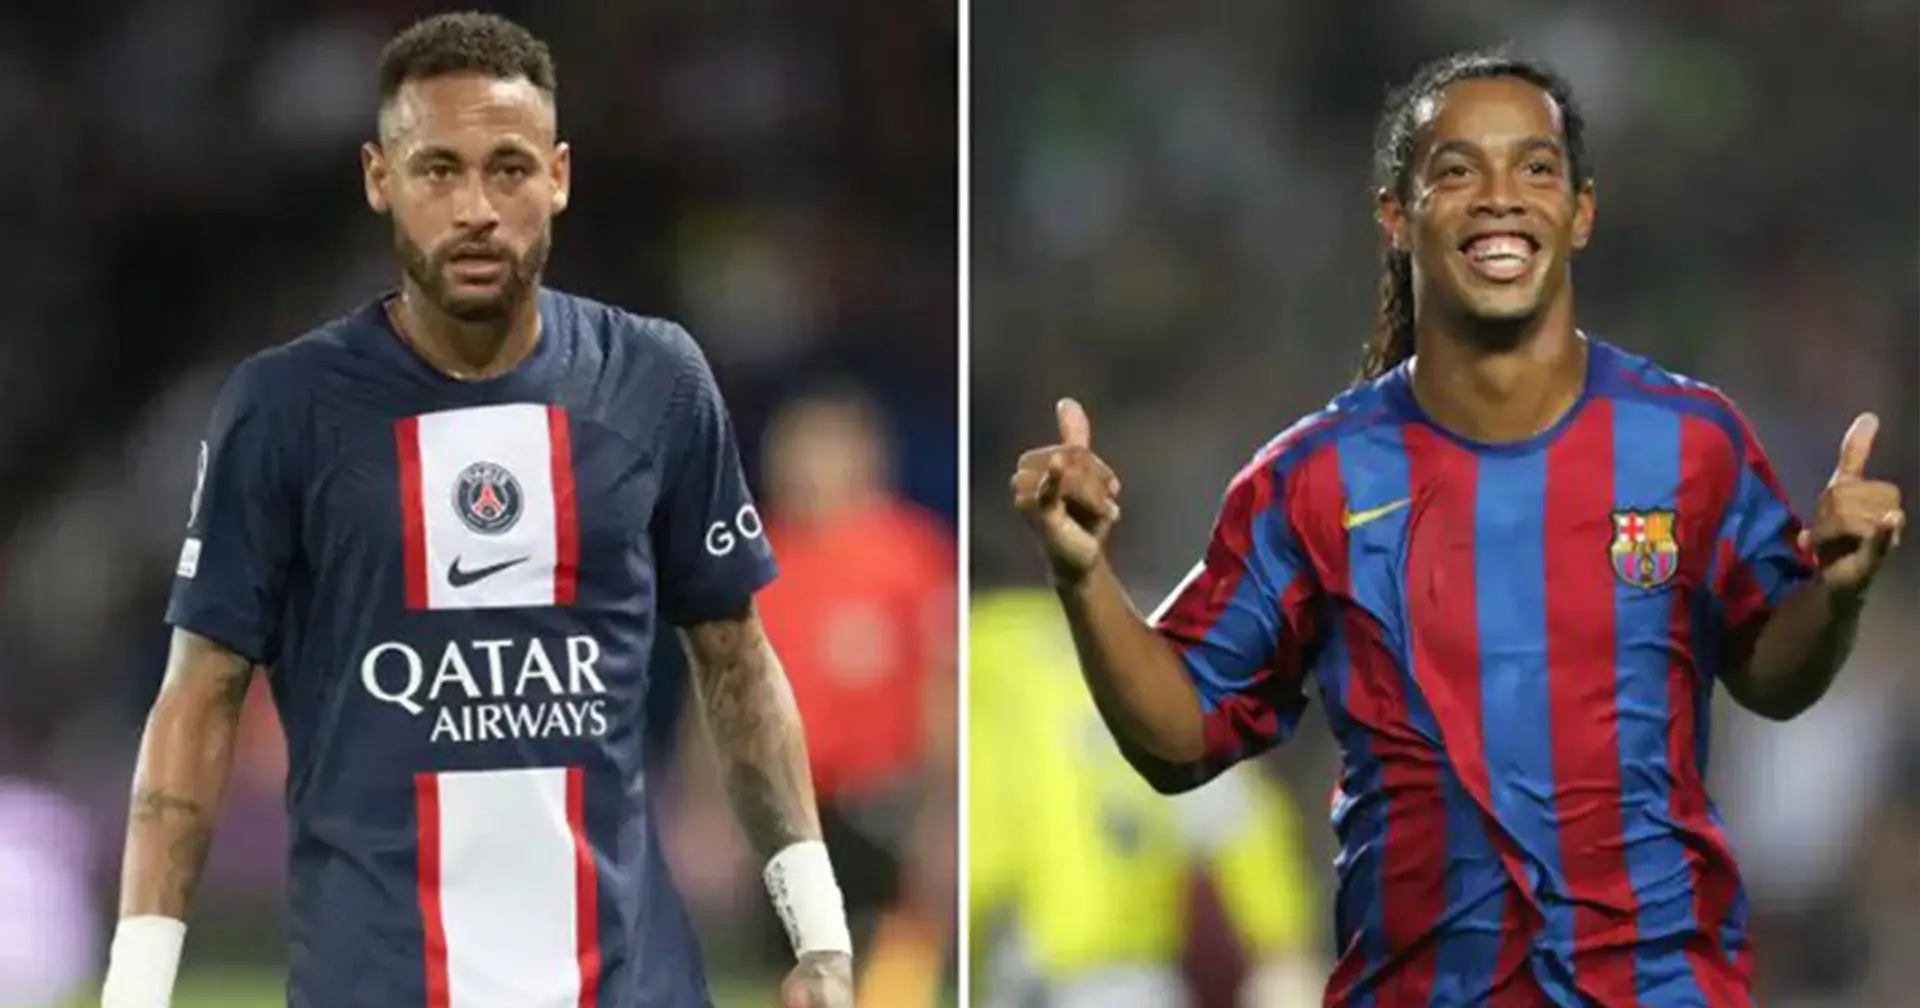 Einige Fans sind der Meinung, dass Neymar besser ist als Ronaldinho. Das Thema wurde im Internet heftig diskutiert